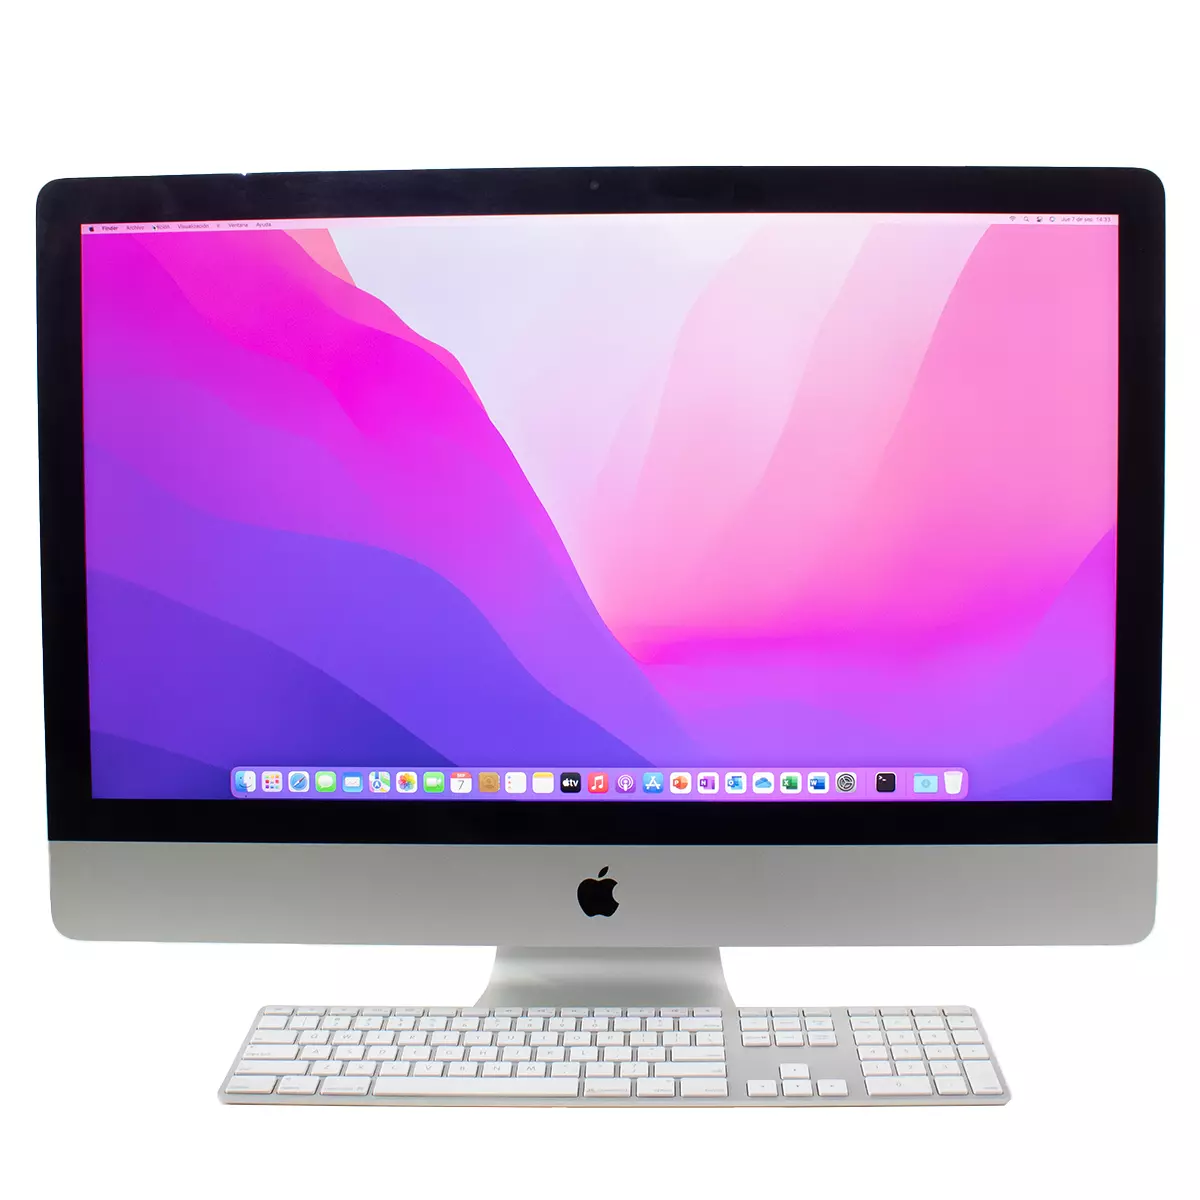 Apple iMac i7 5K año 2015 de 27'